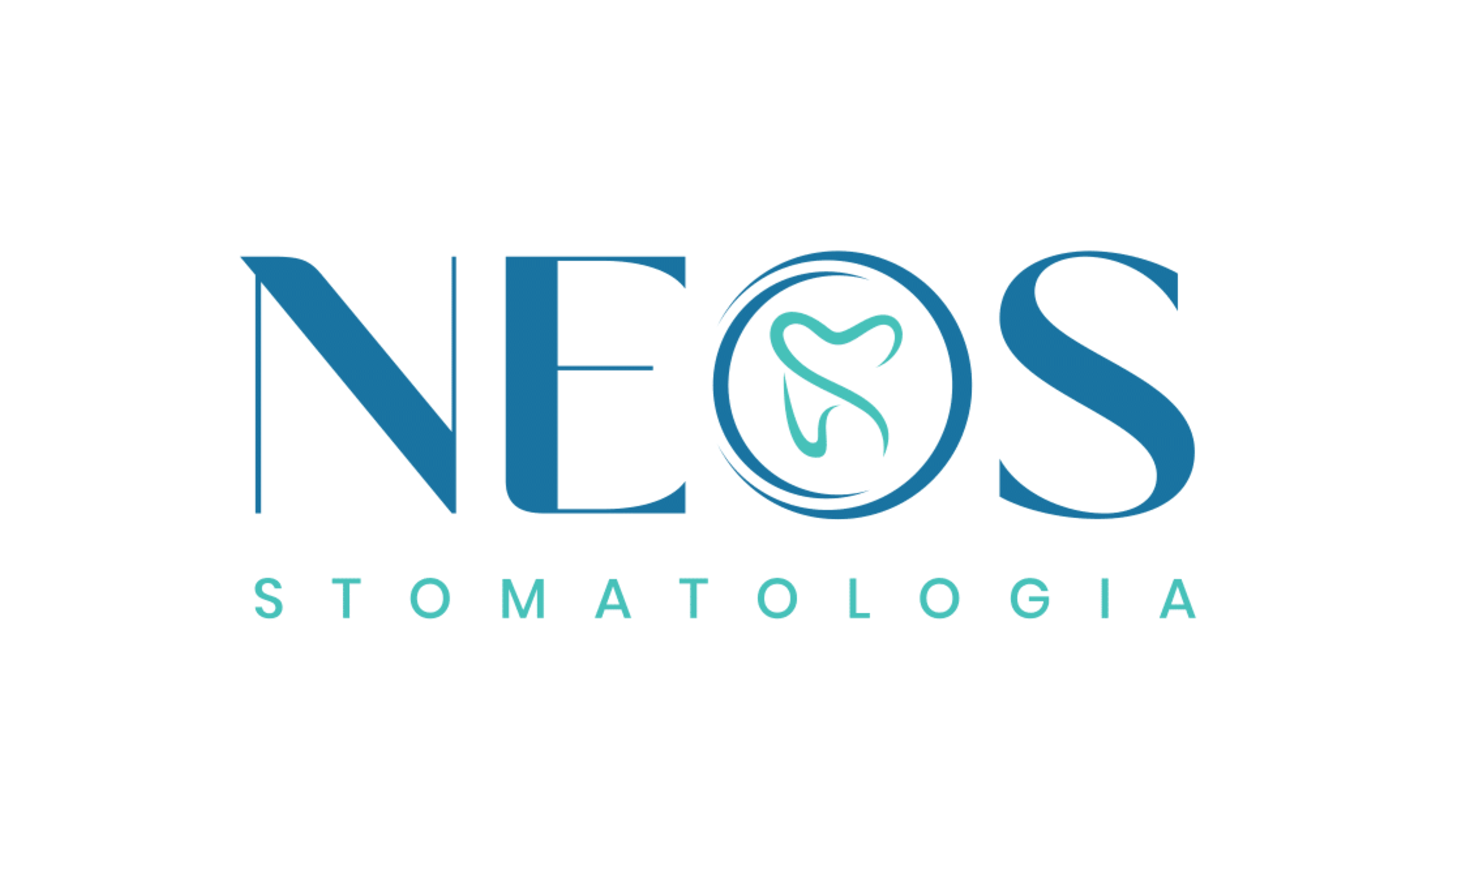 NEOS Stomatologia  logo